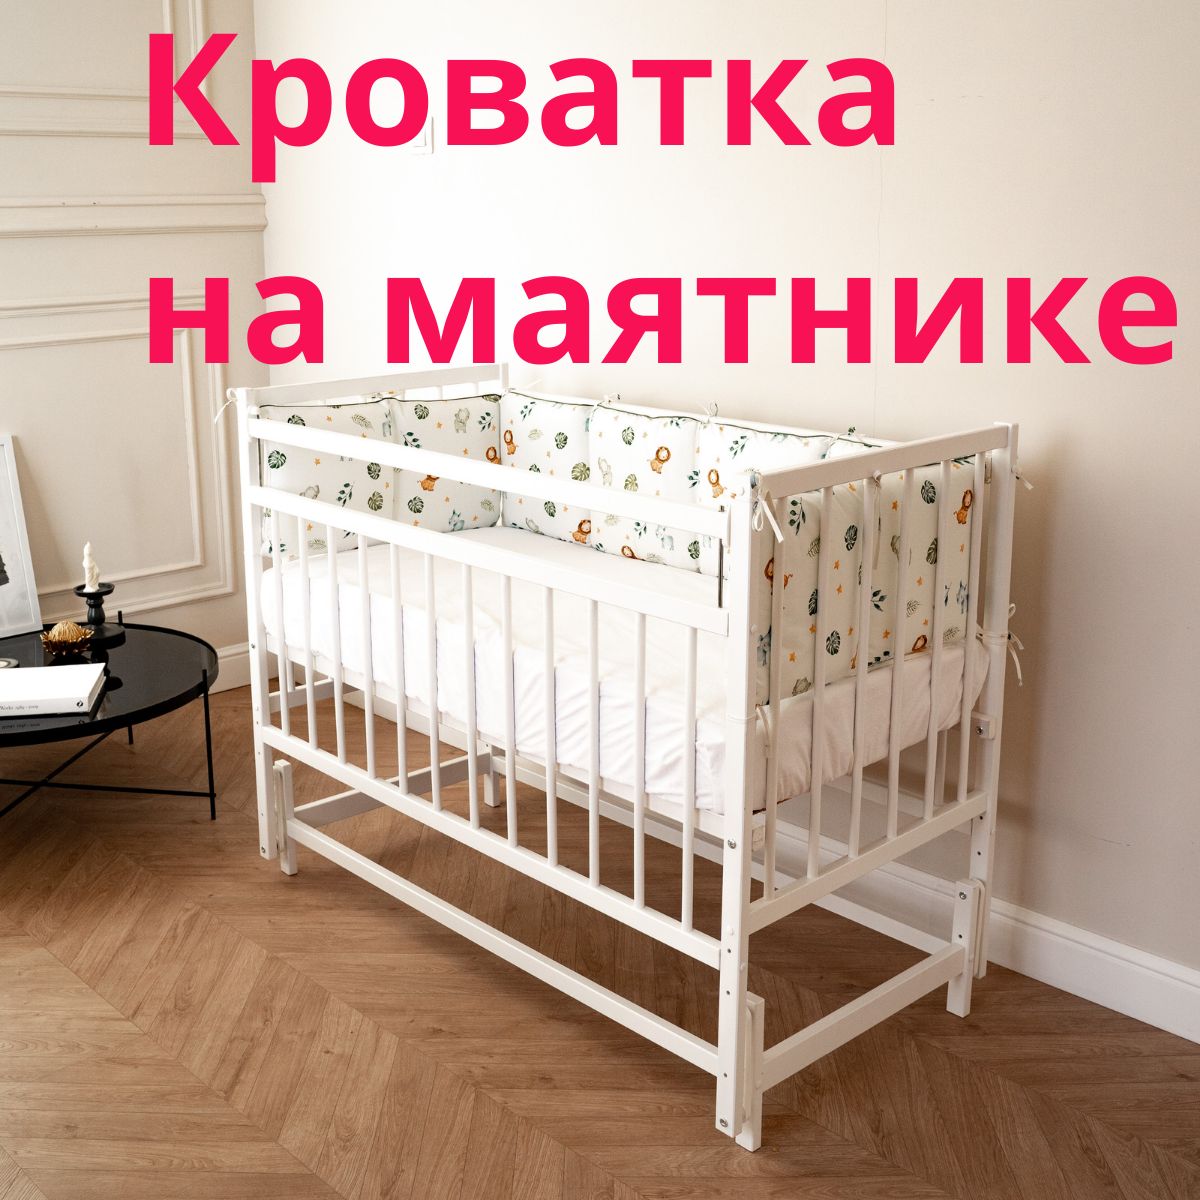 Как сделать кровать из поддонов своими руками — пошаговая инструкция | centerforstrategy.ru